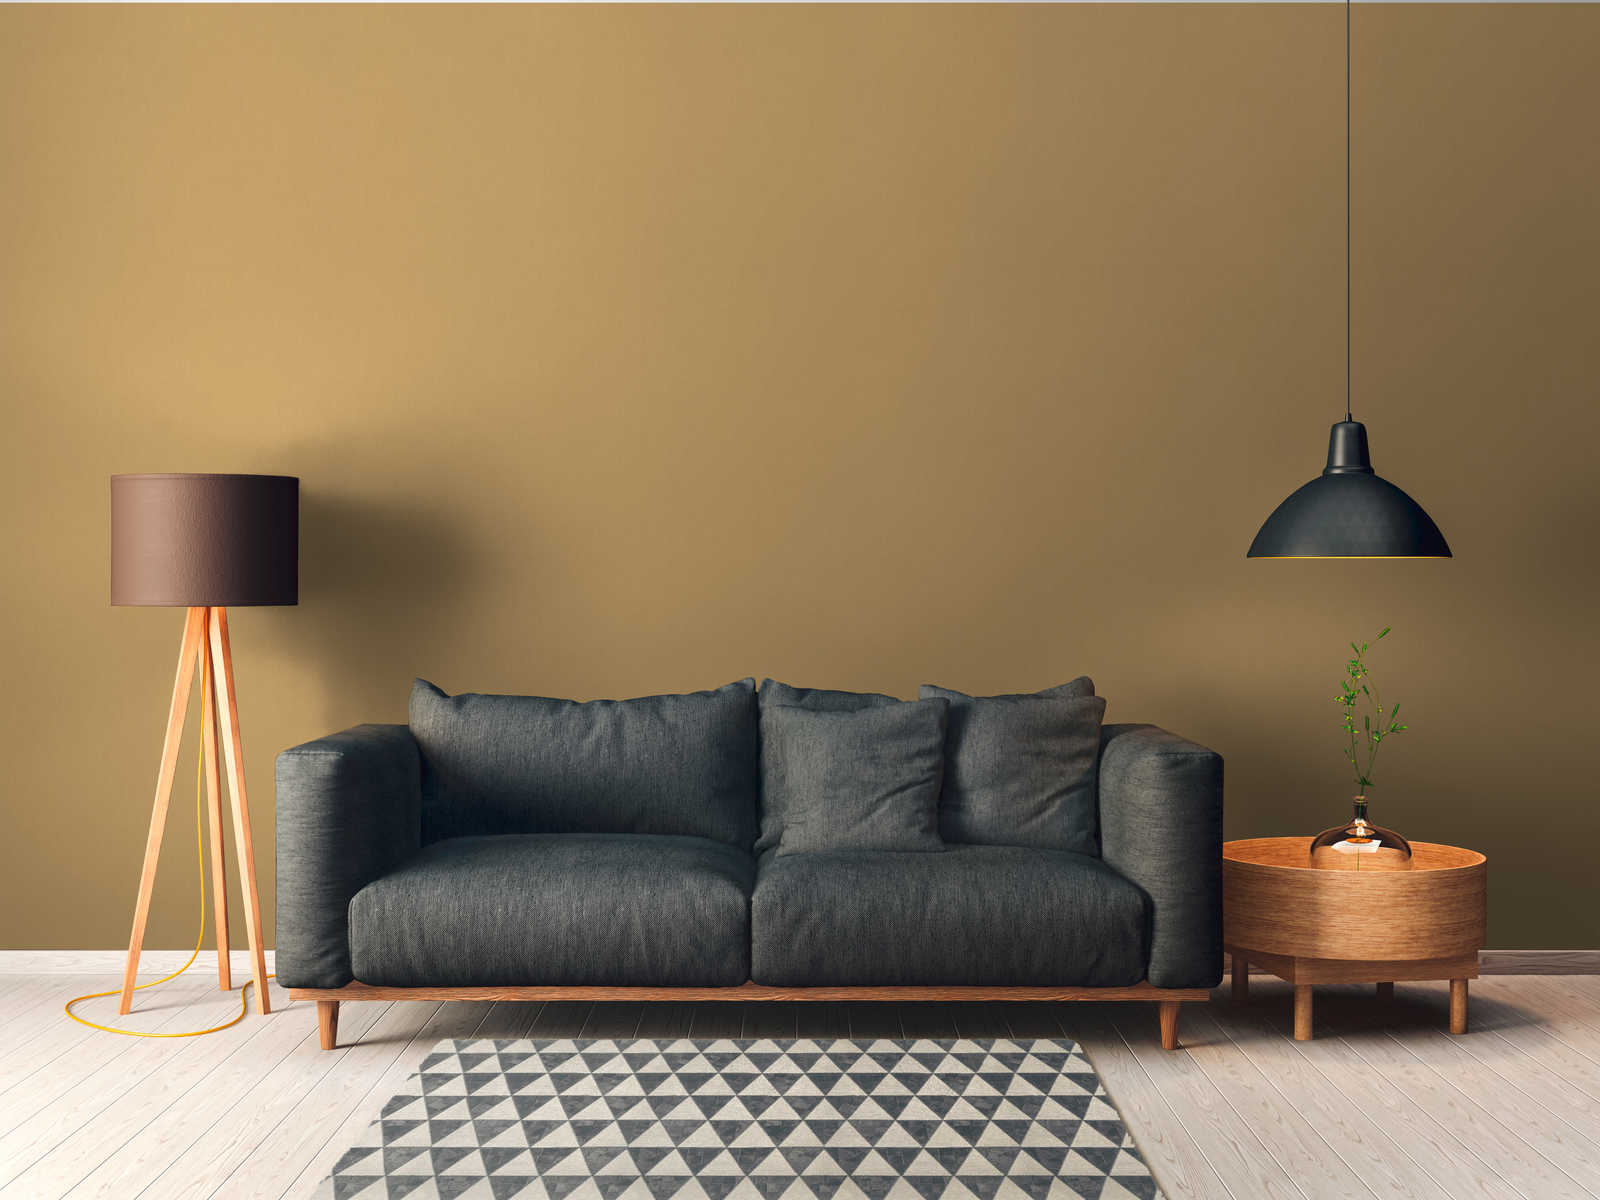             wallpaper ocher yellow plain with matte textile texture - yellow
        